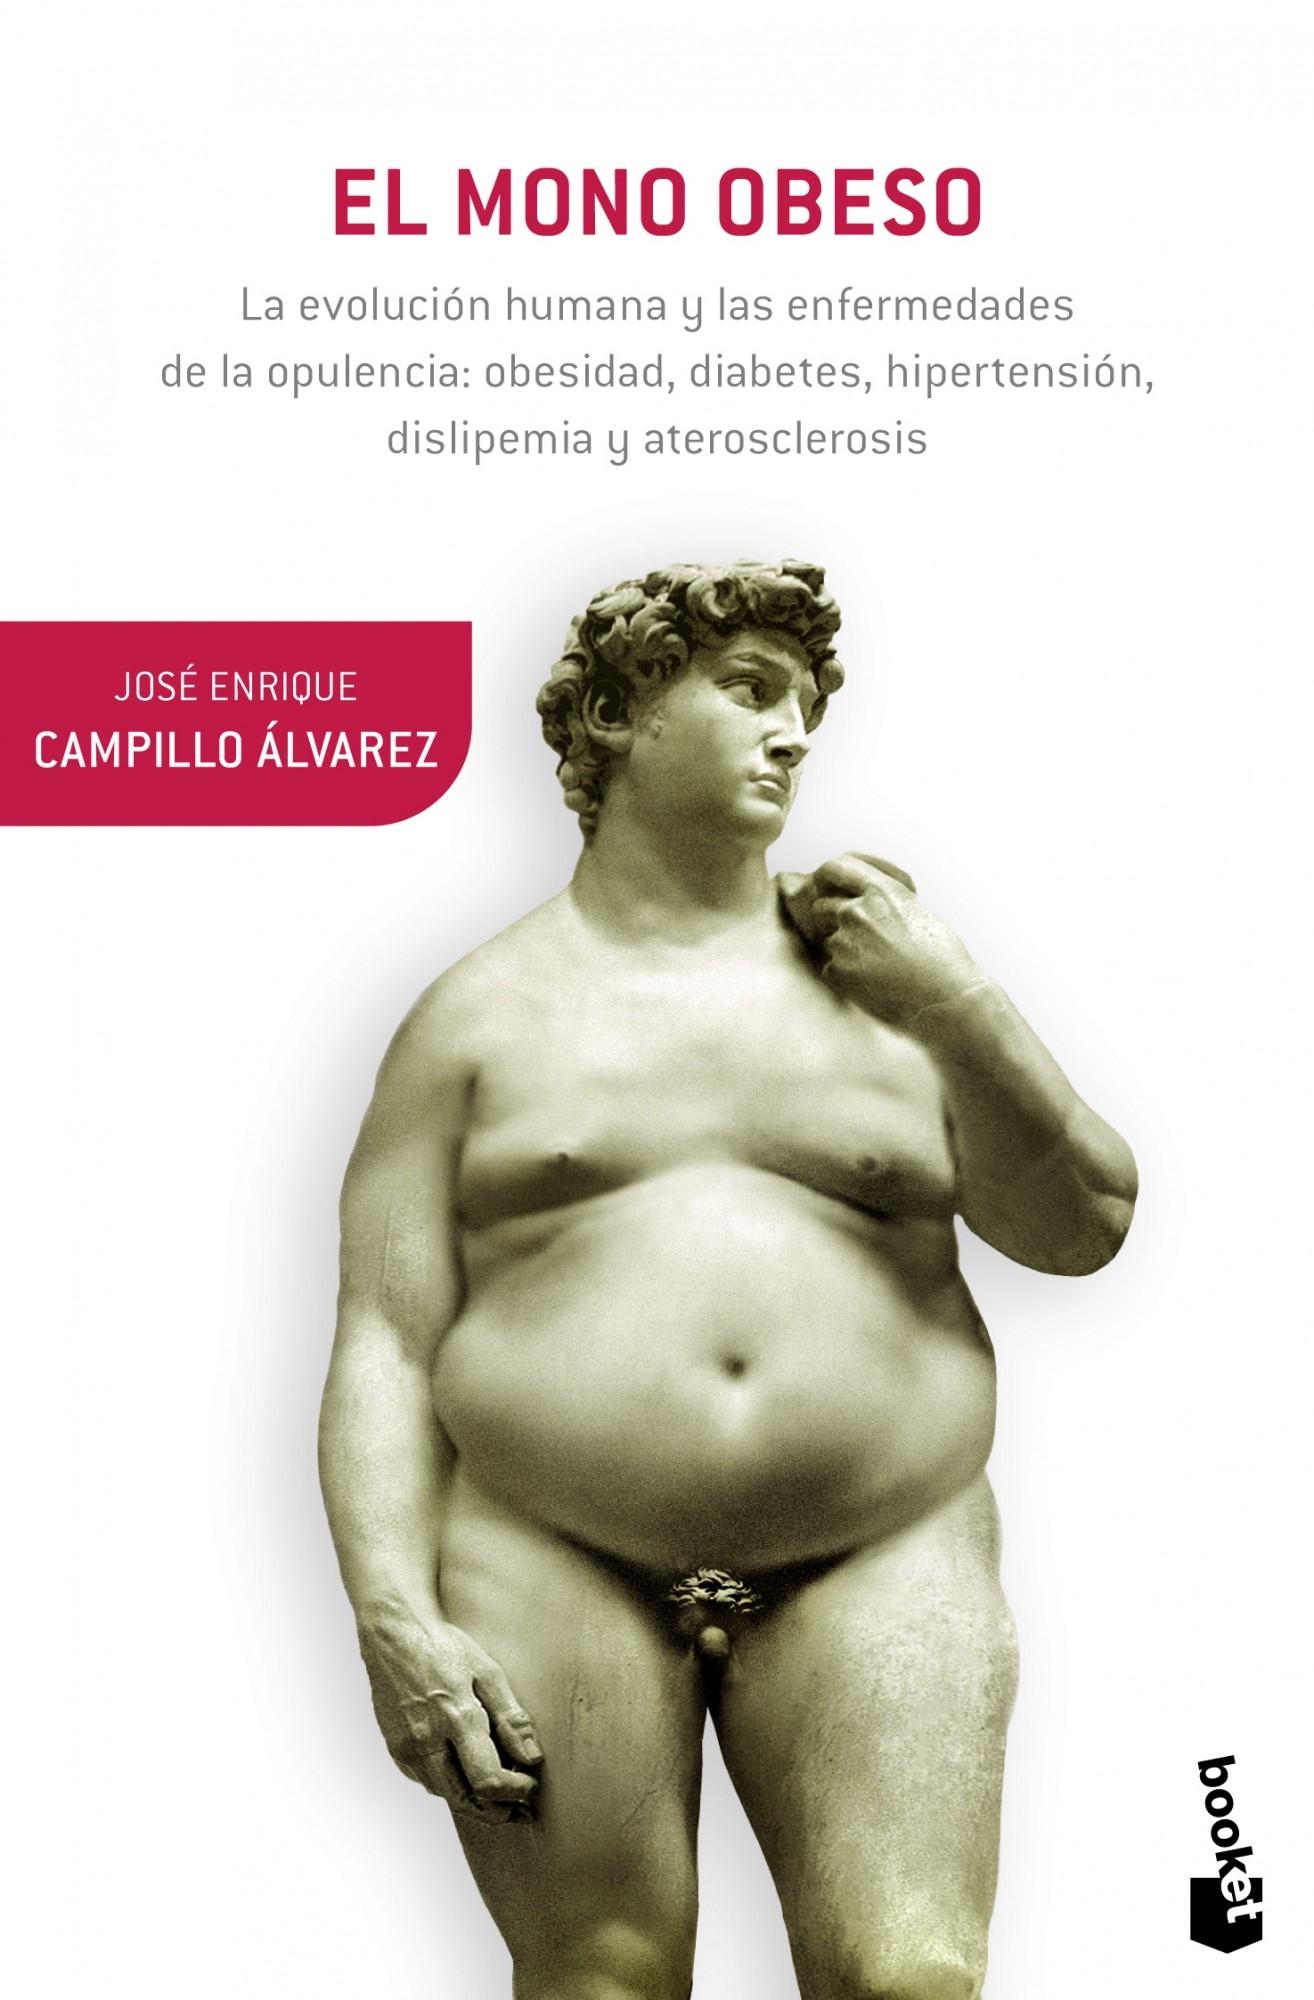 El Mono Obeso "La Evolución Humana y las Enfermedades de la Opulencia: Obesidad, Diabet"